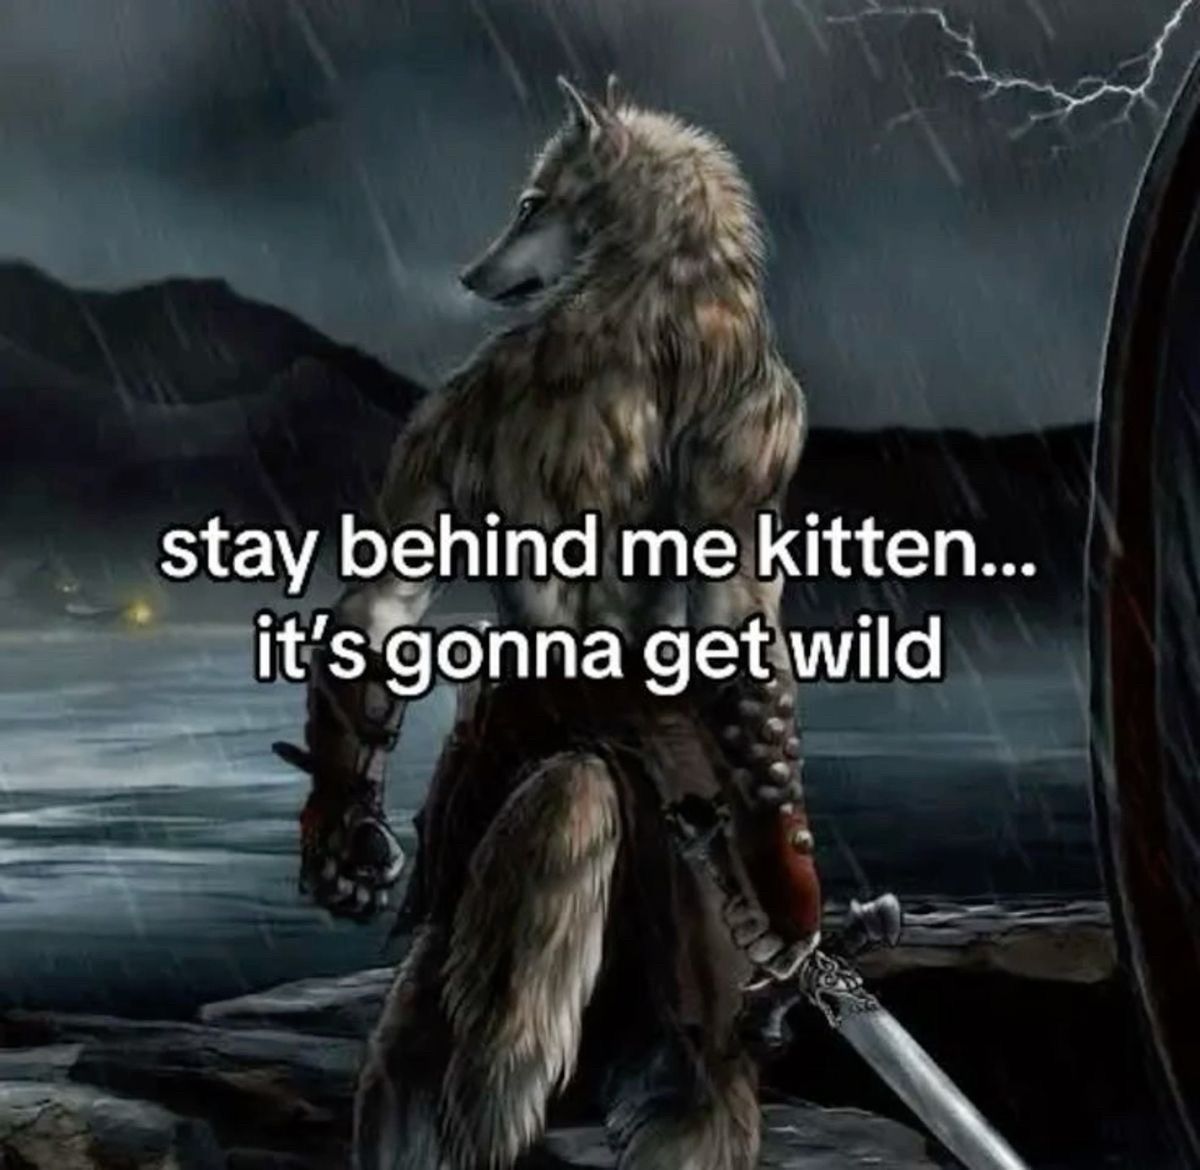 stay behind me kitten...
it's gonna get wild